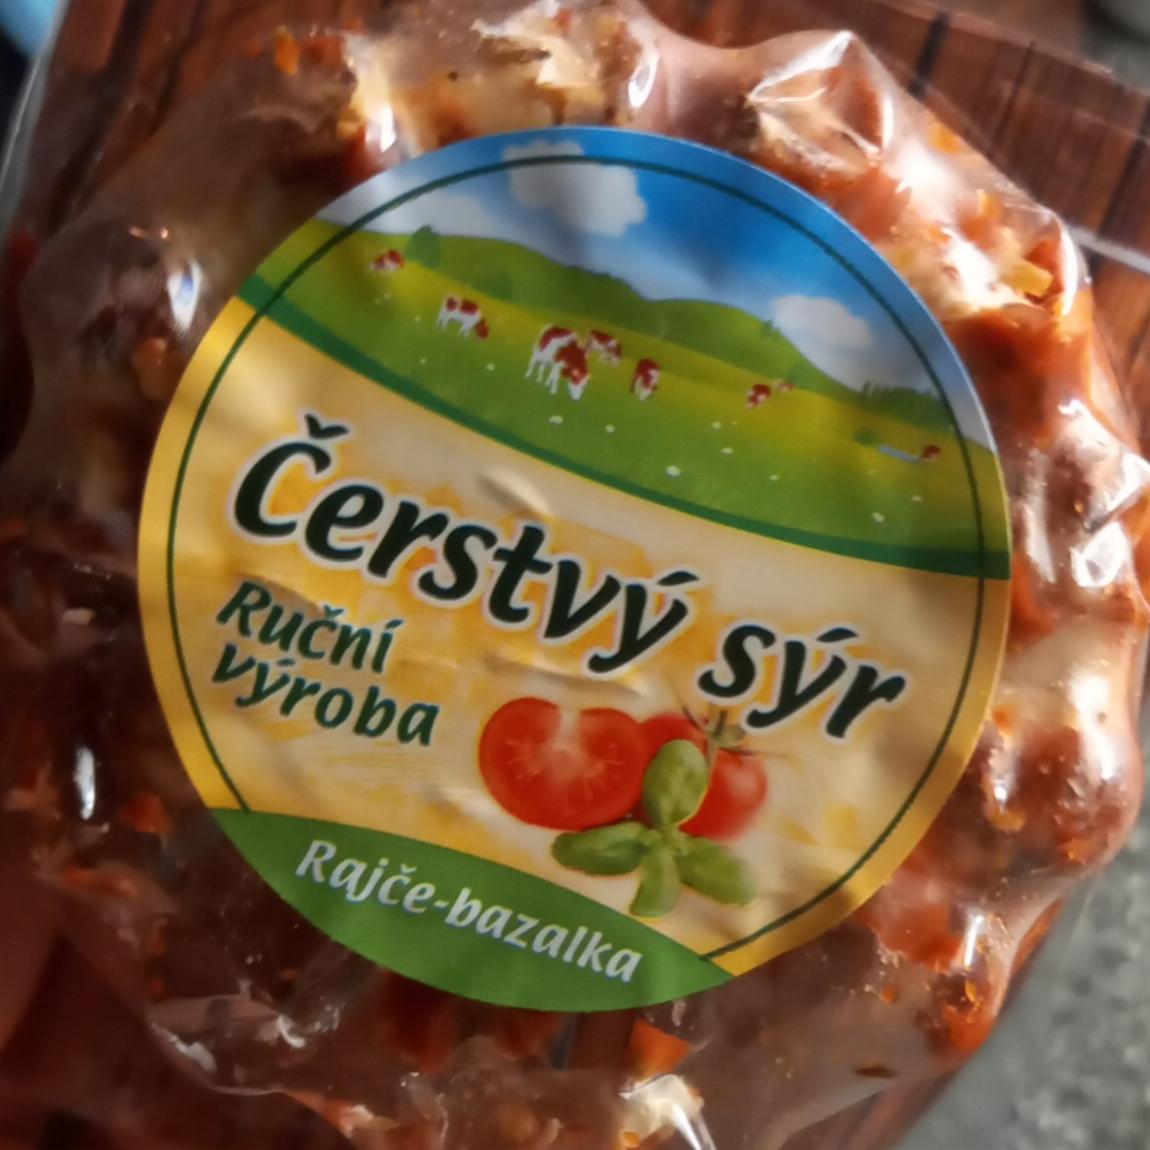 Fotografie - Čerstvý sýr rajče-bazalka Kromilk